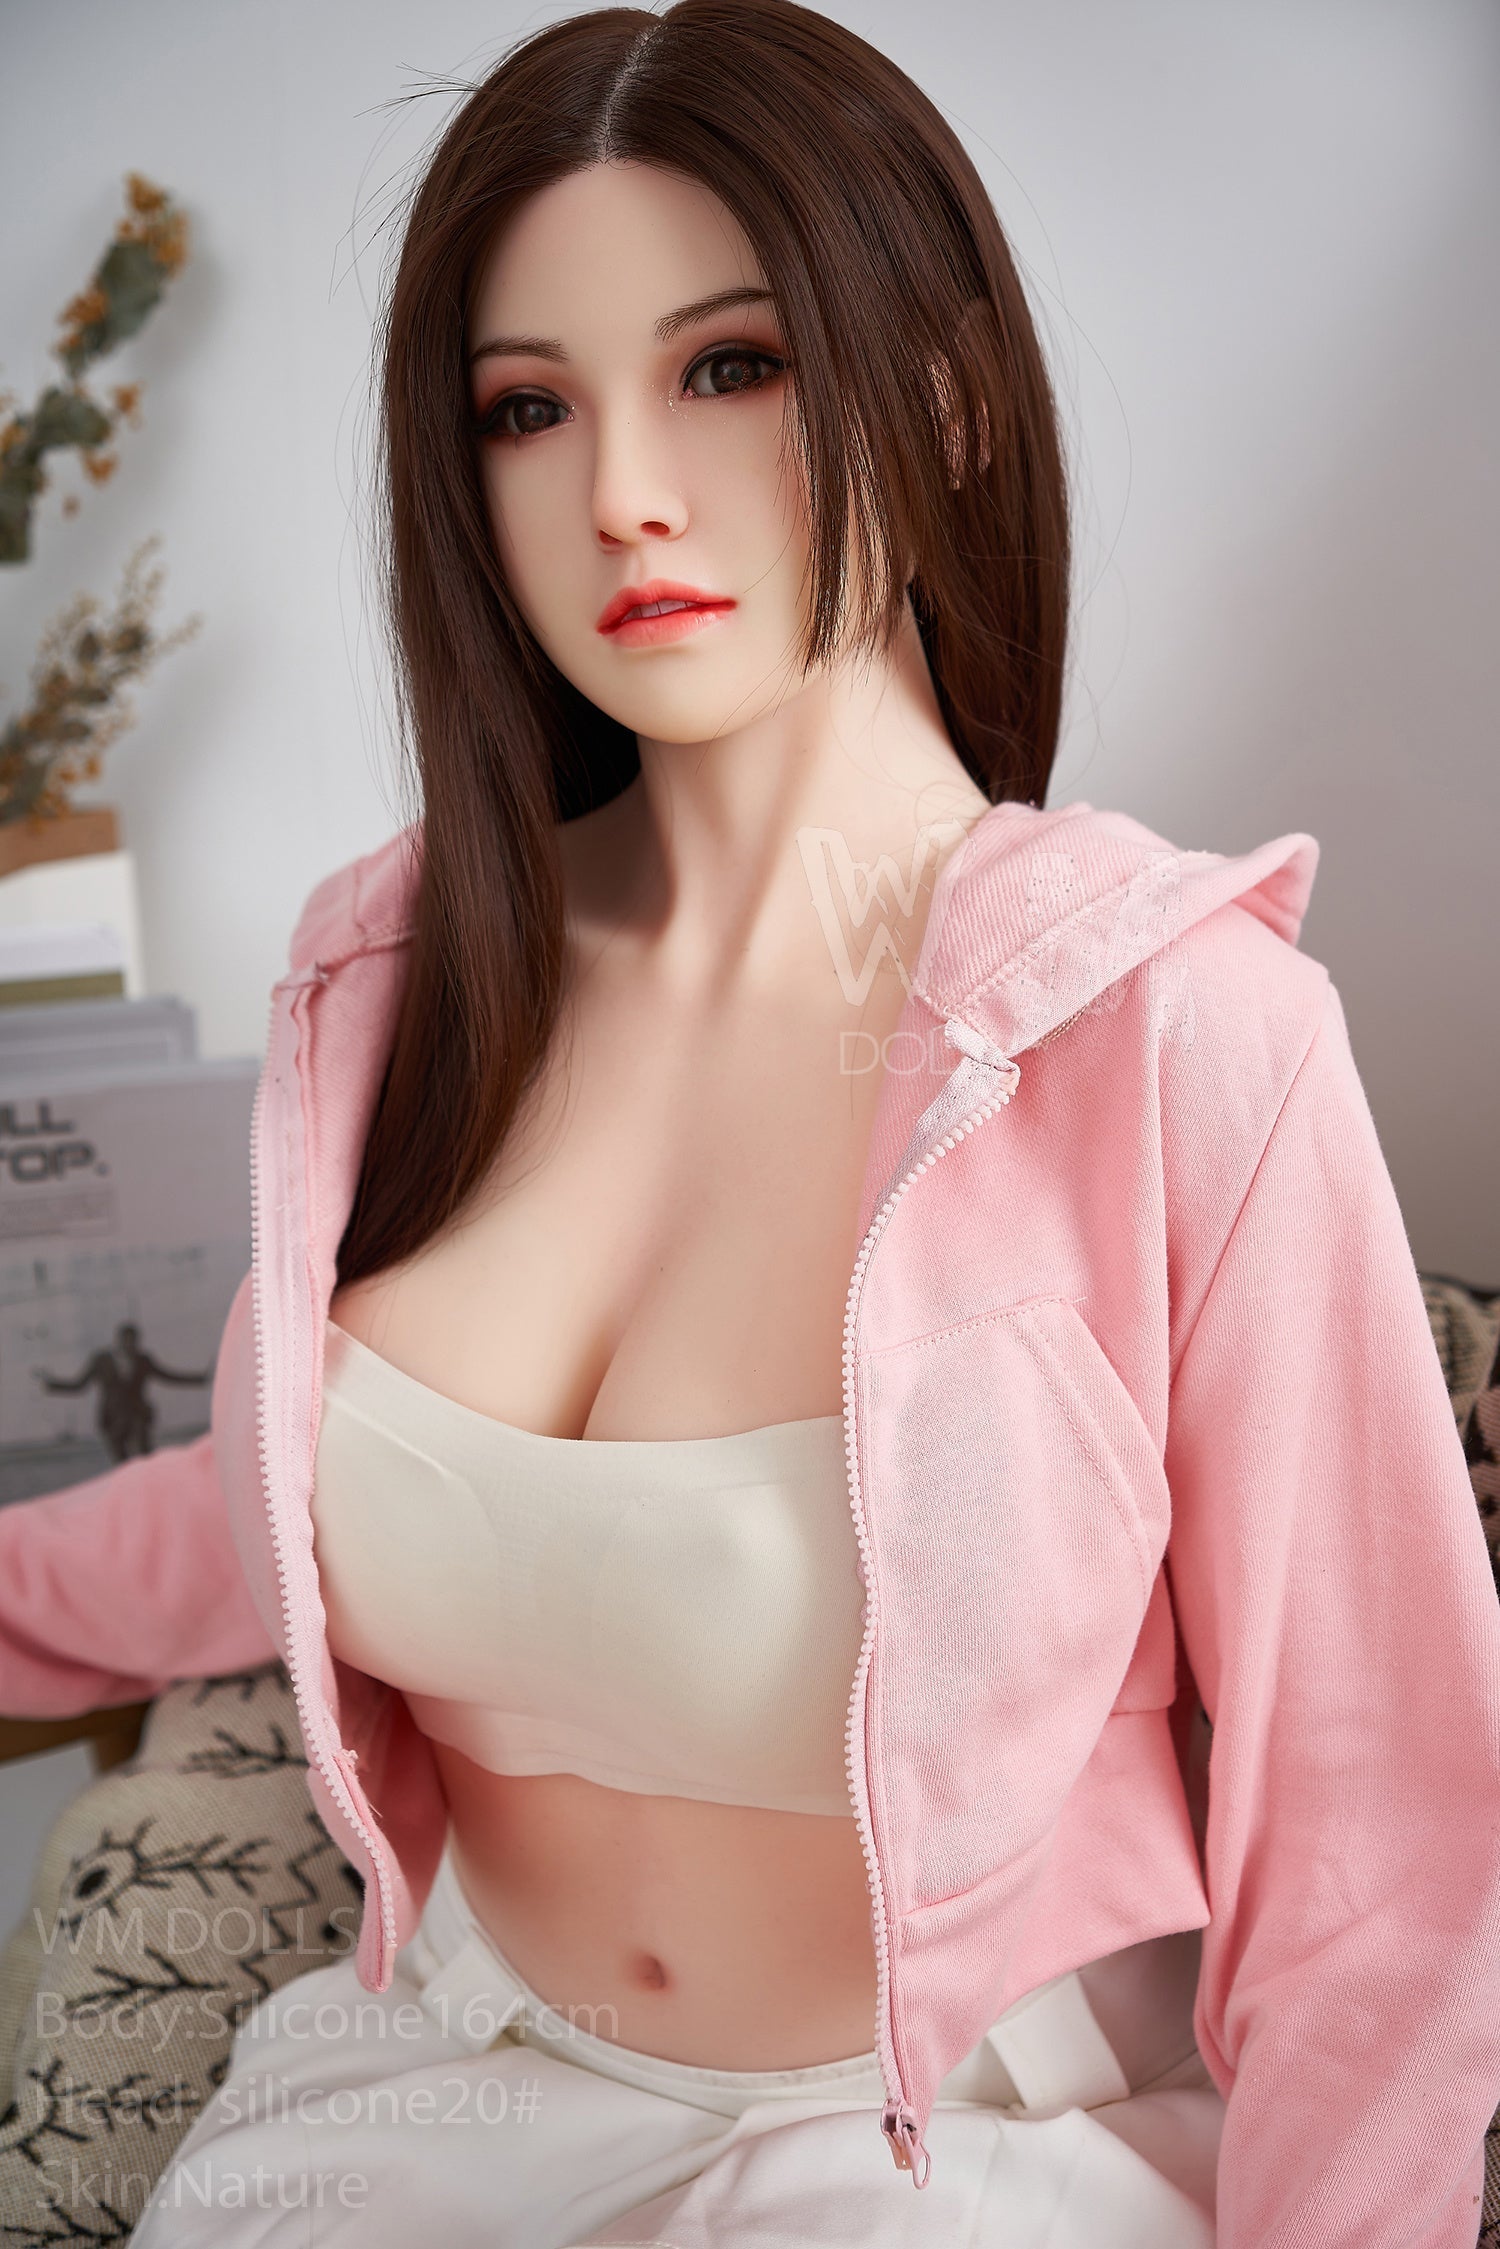 WM Doll 164 cm D Silicone - Maeve | Sex Dolls SG